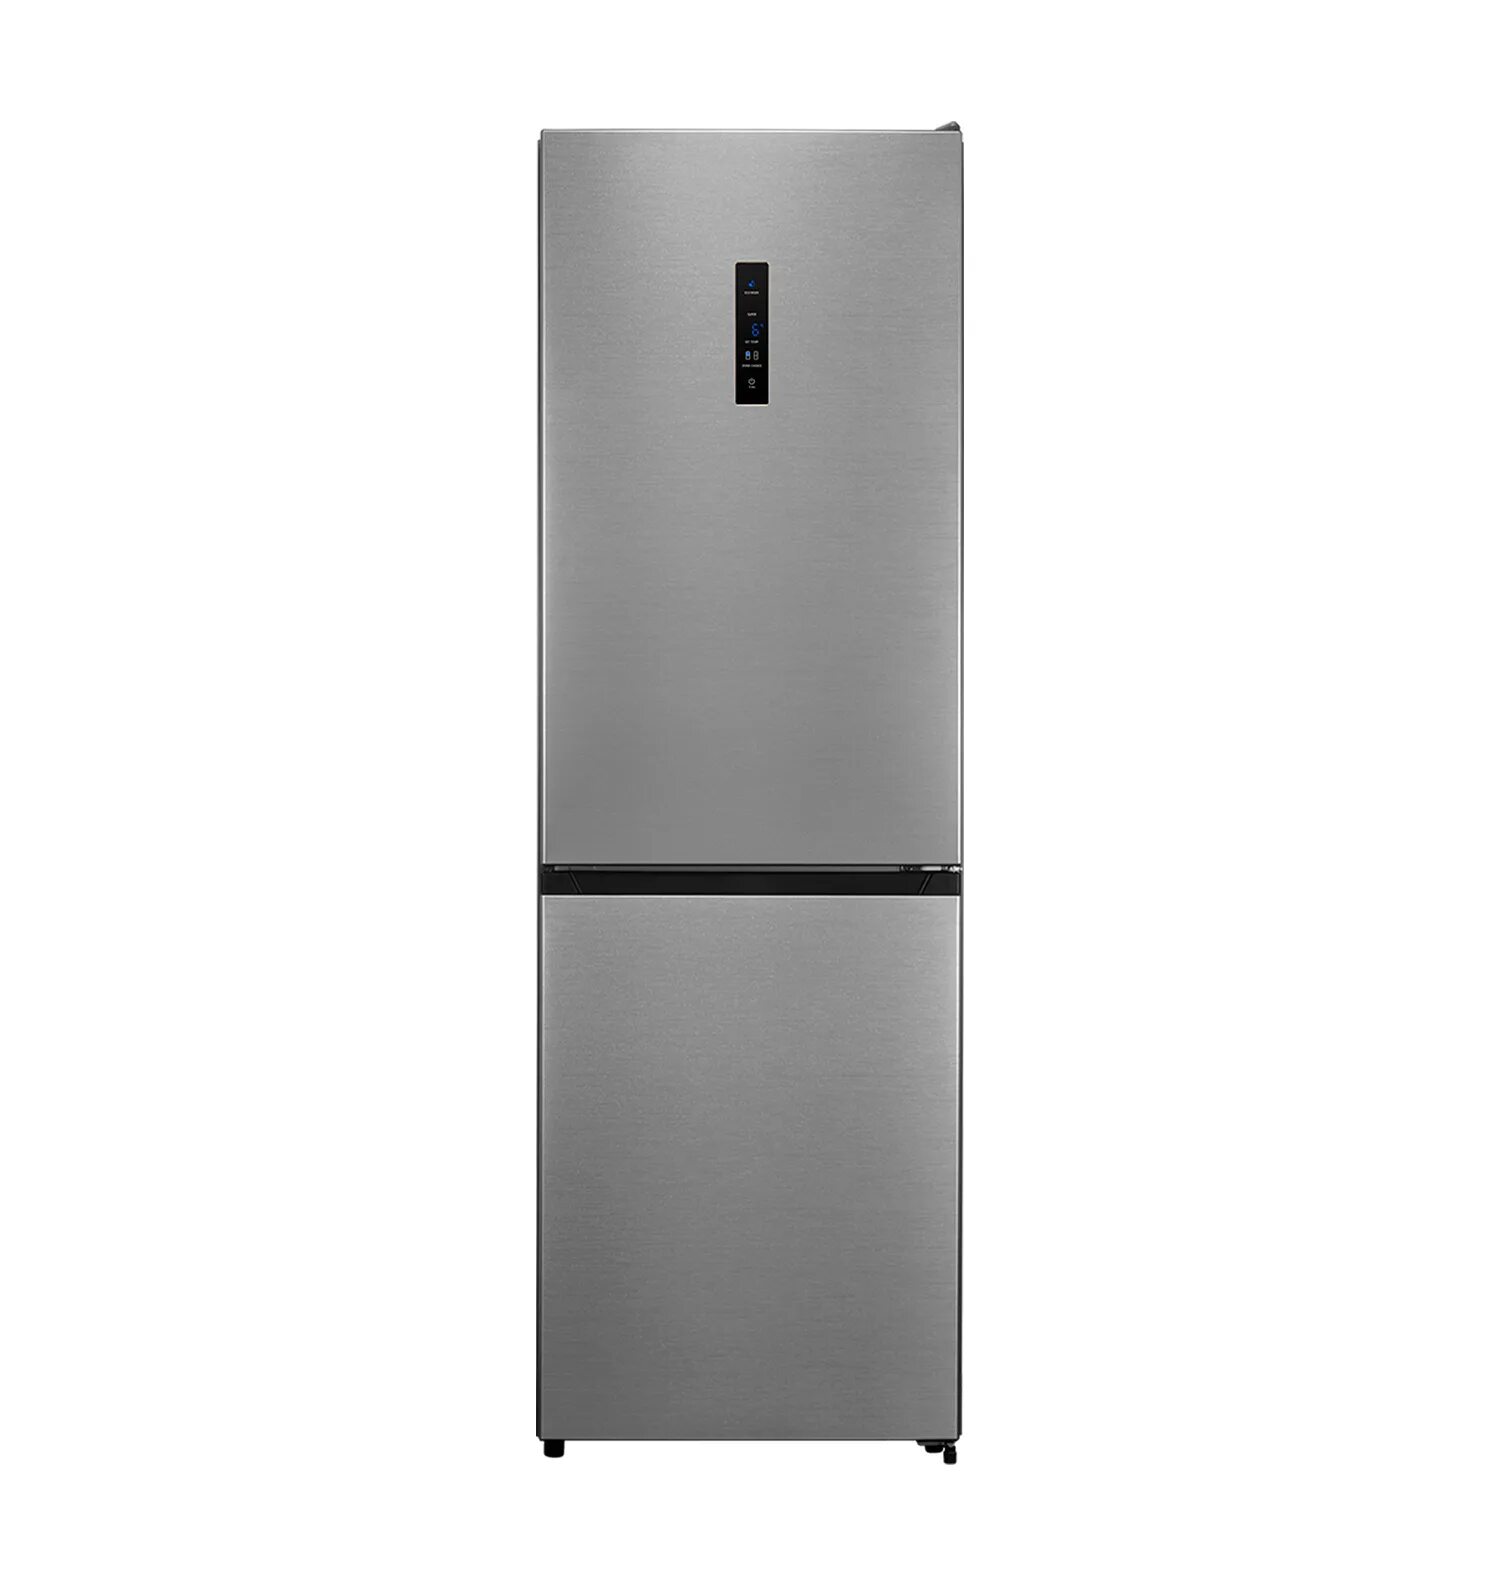 Холодильник Lex RFS 203 NF BL. Холодильник Haier cef537asg. Холодильник Lex RFS 203 NF inox. Холодильник Hotpoint-Ariston HTS 4180 S.